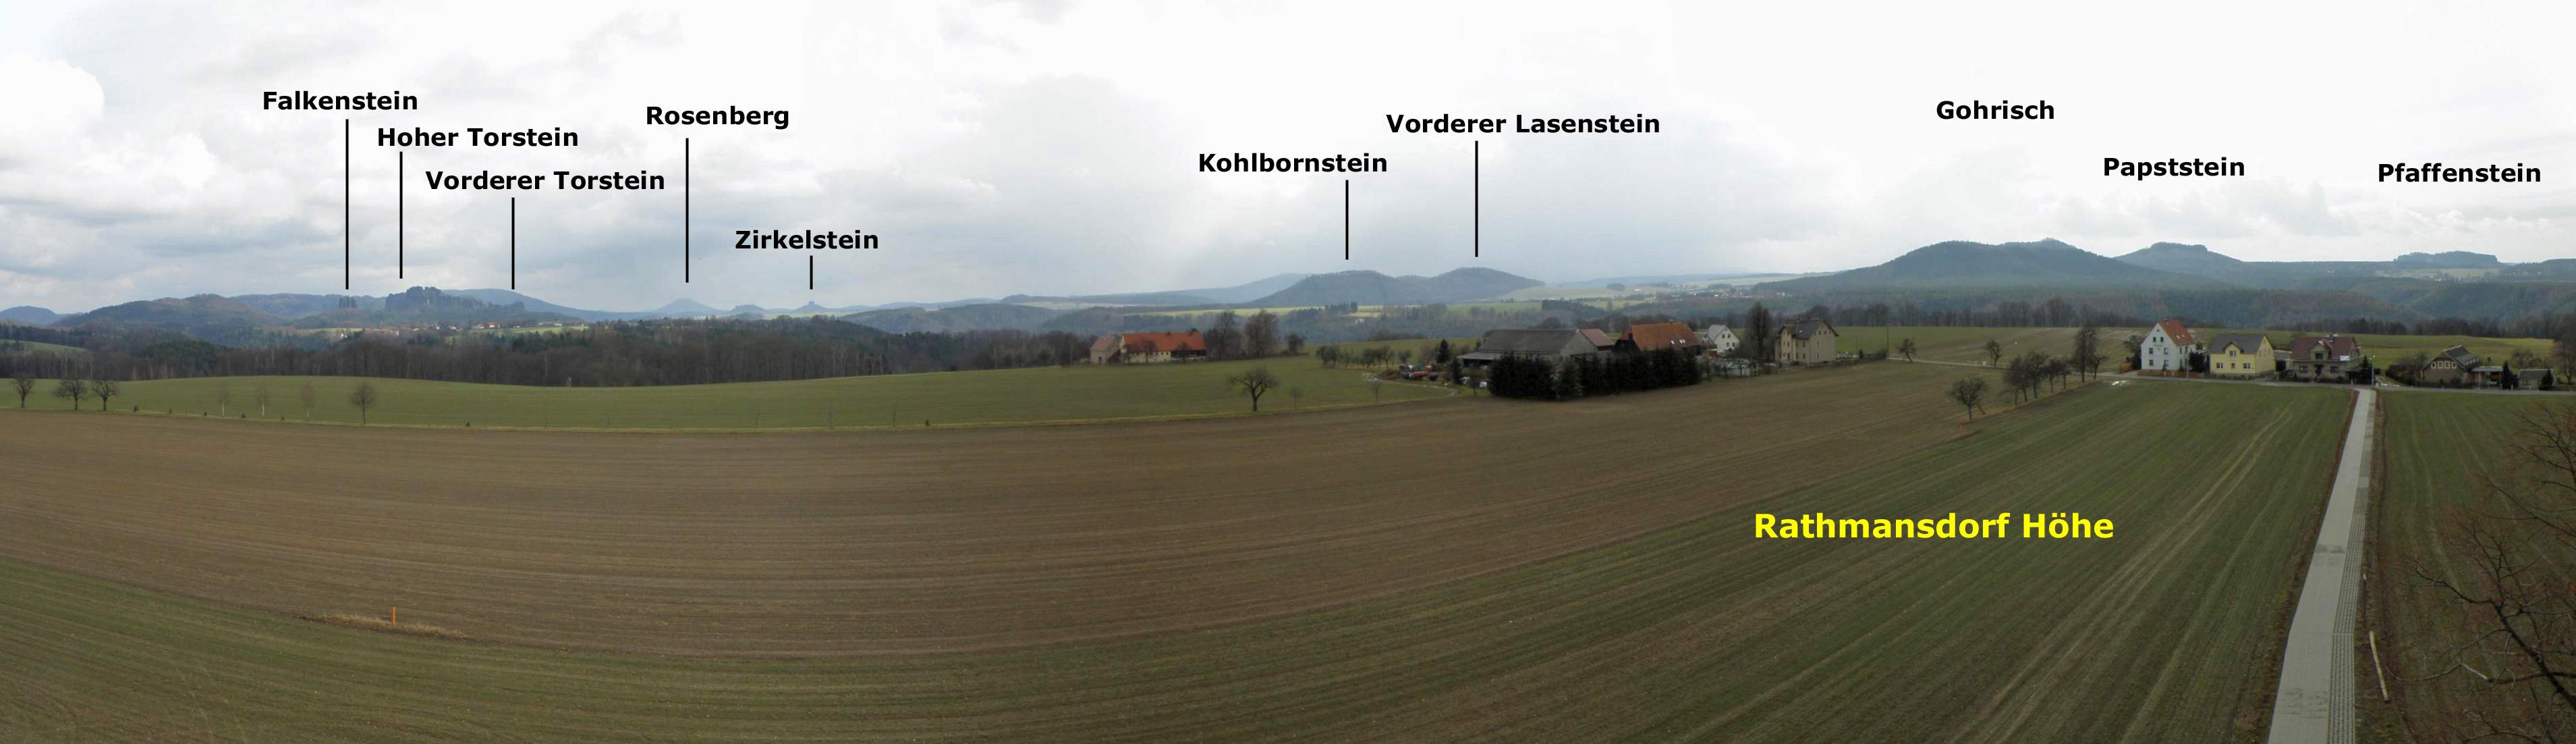 Panorama vom Aussichtsturm Rathmannsdorf-Höhe in Richtung Süden